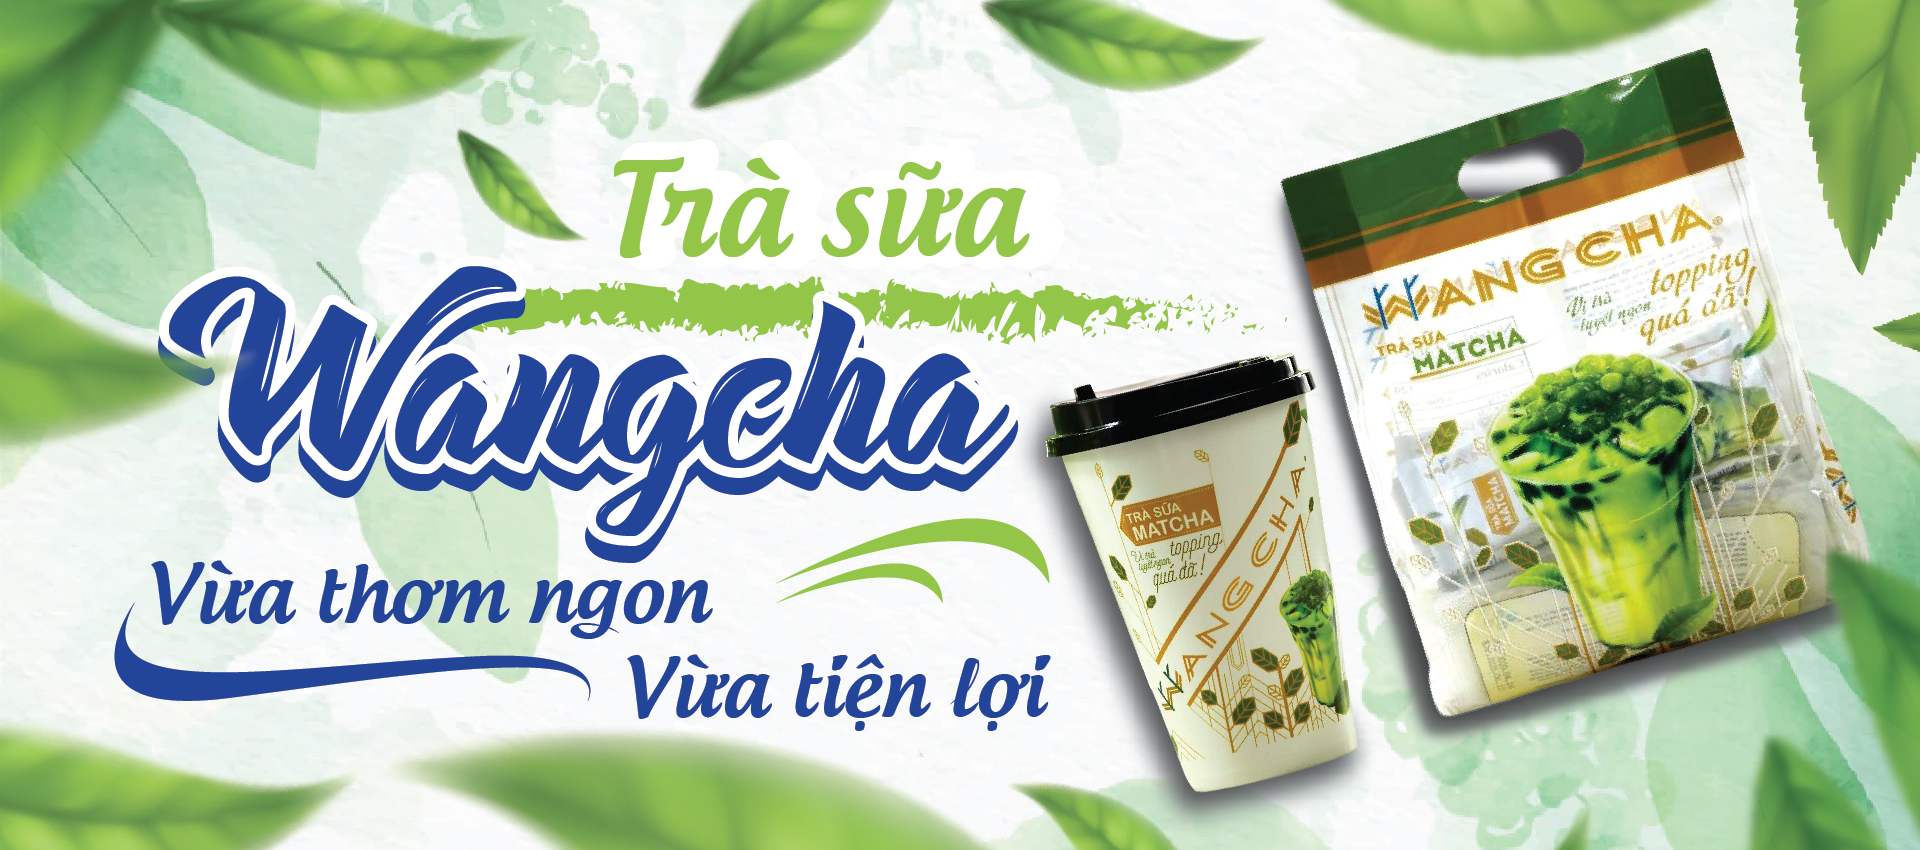 Trà sữa Wangcha vừa thơm ngon - vùa tiện lợi